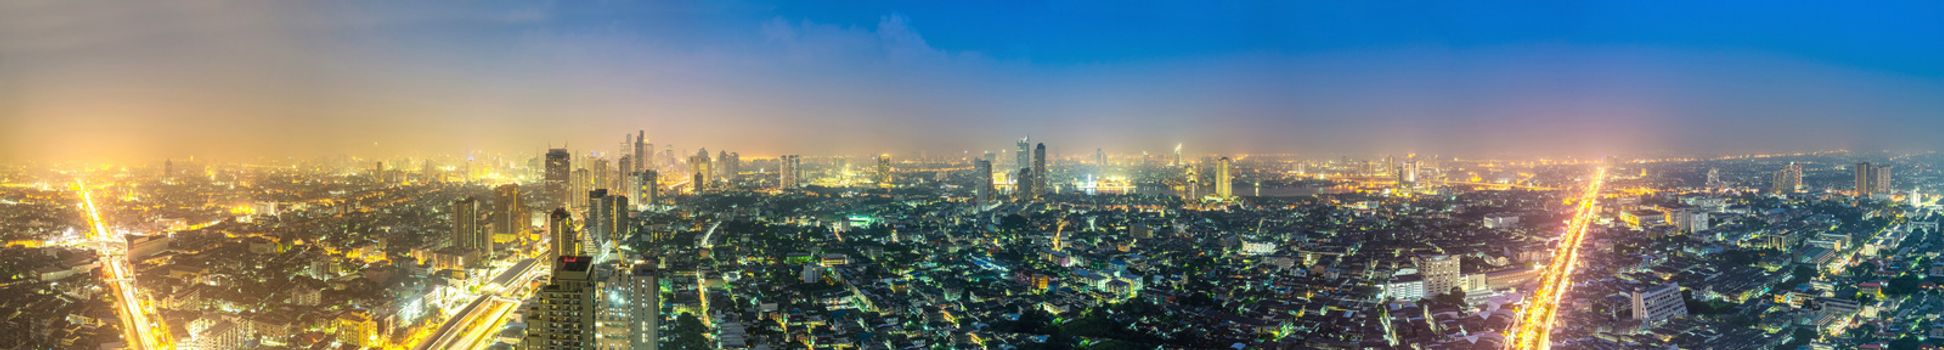 panorama of bangkok city at night